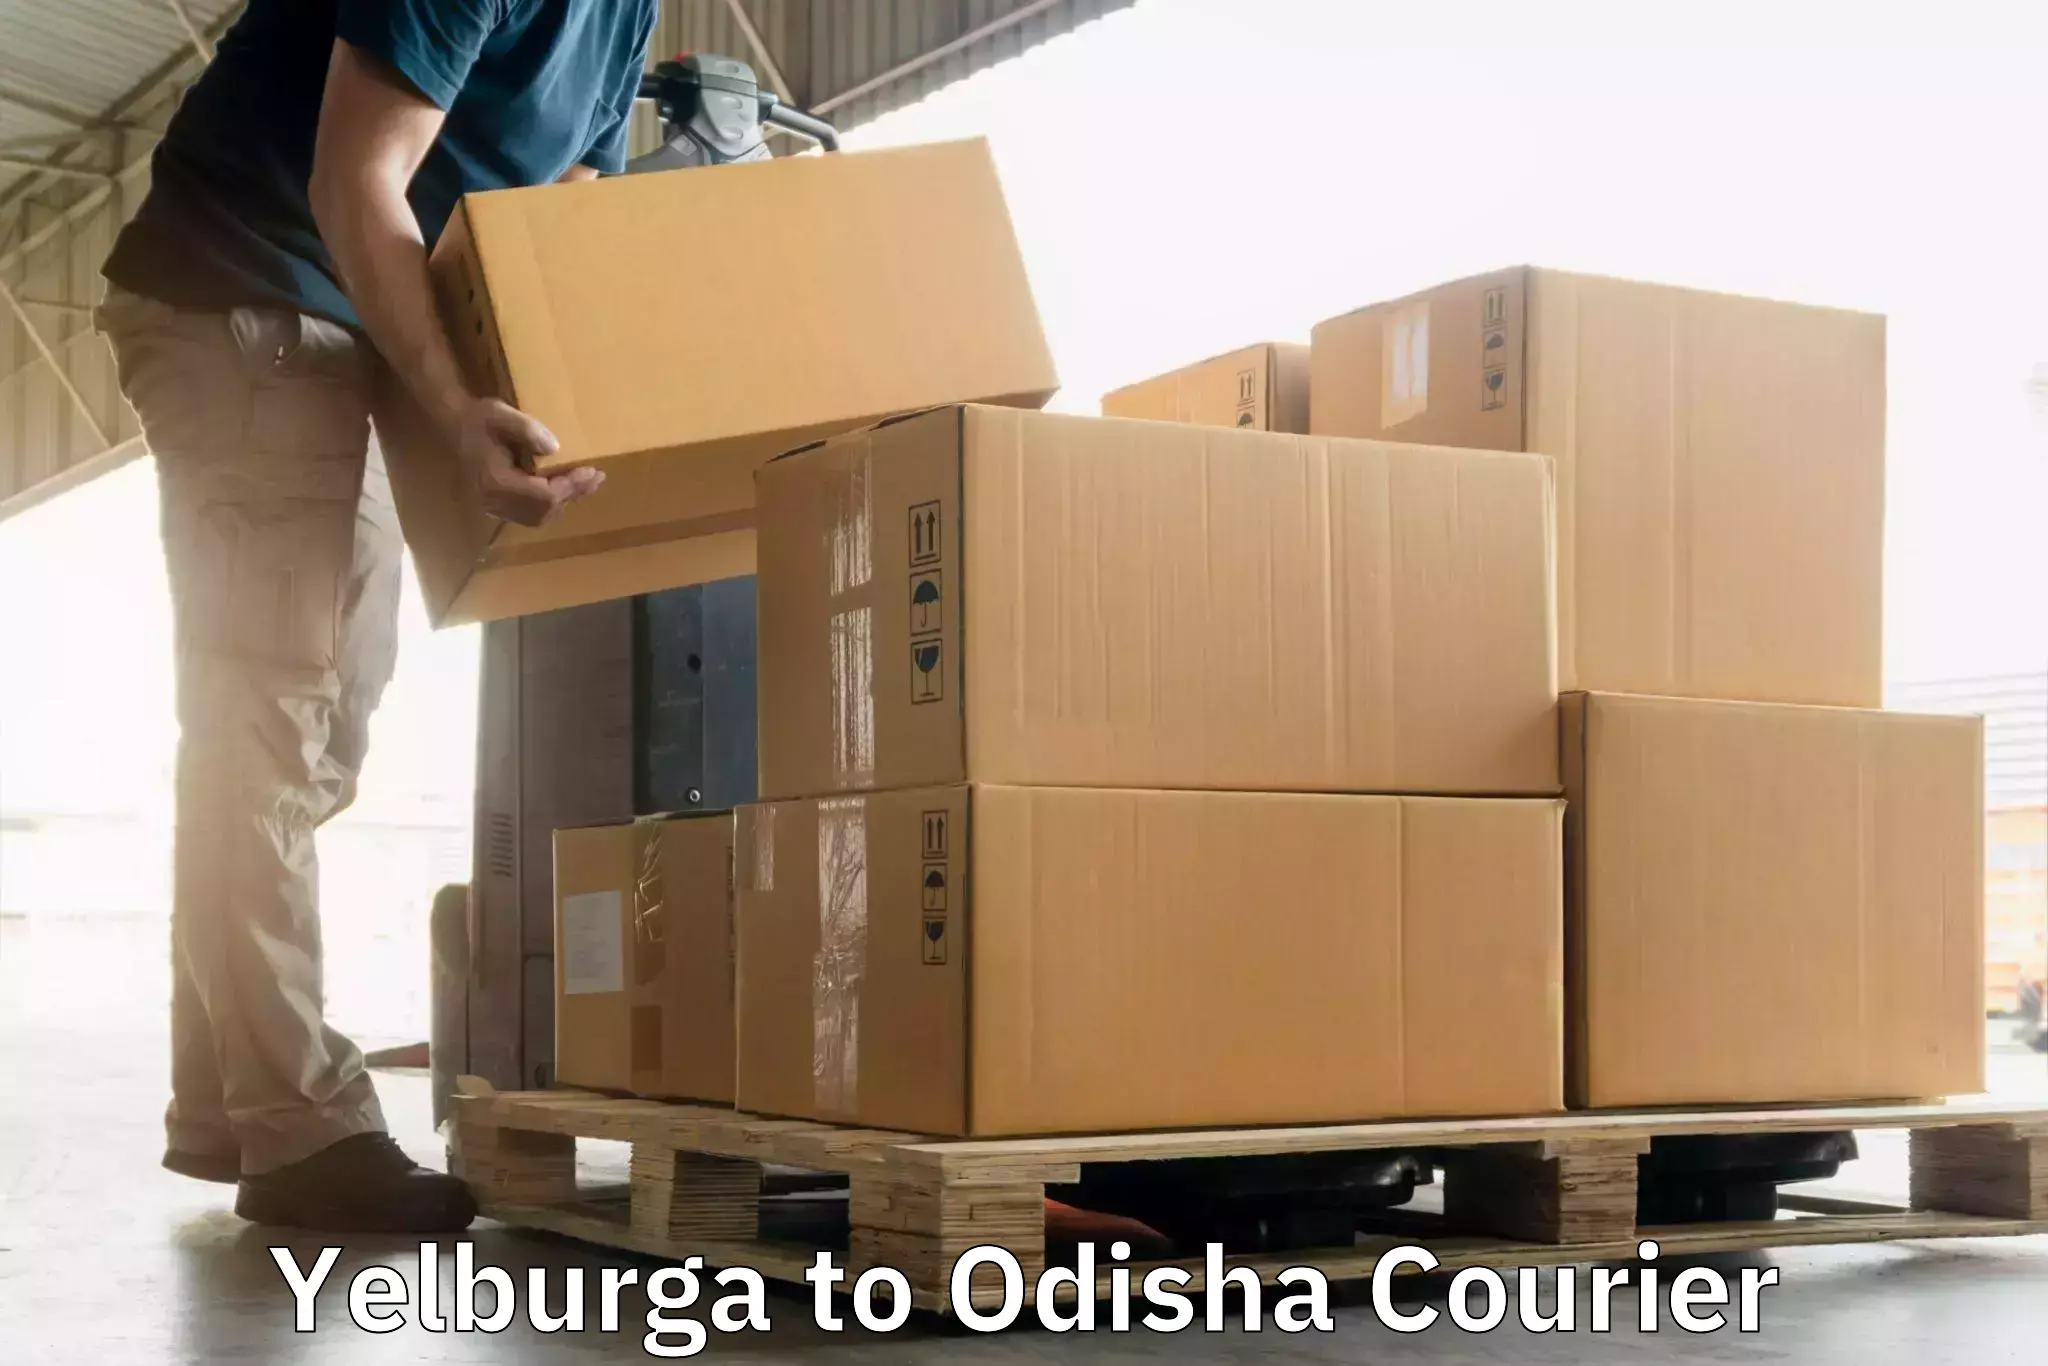 Express package handling Yelburga to Swampatna